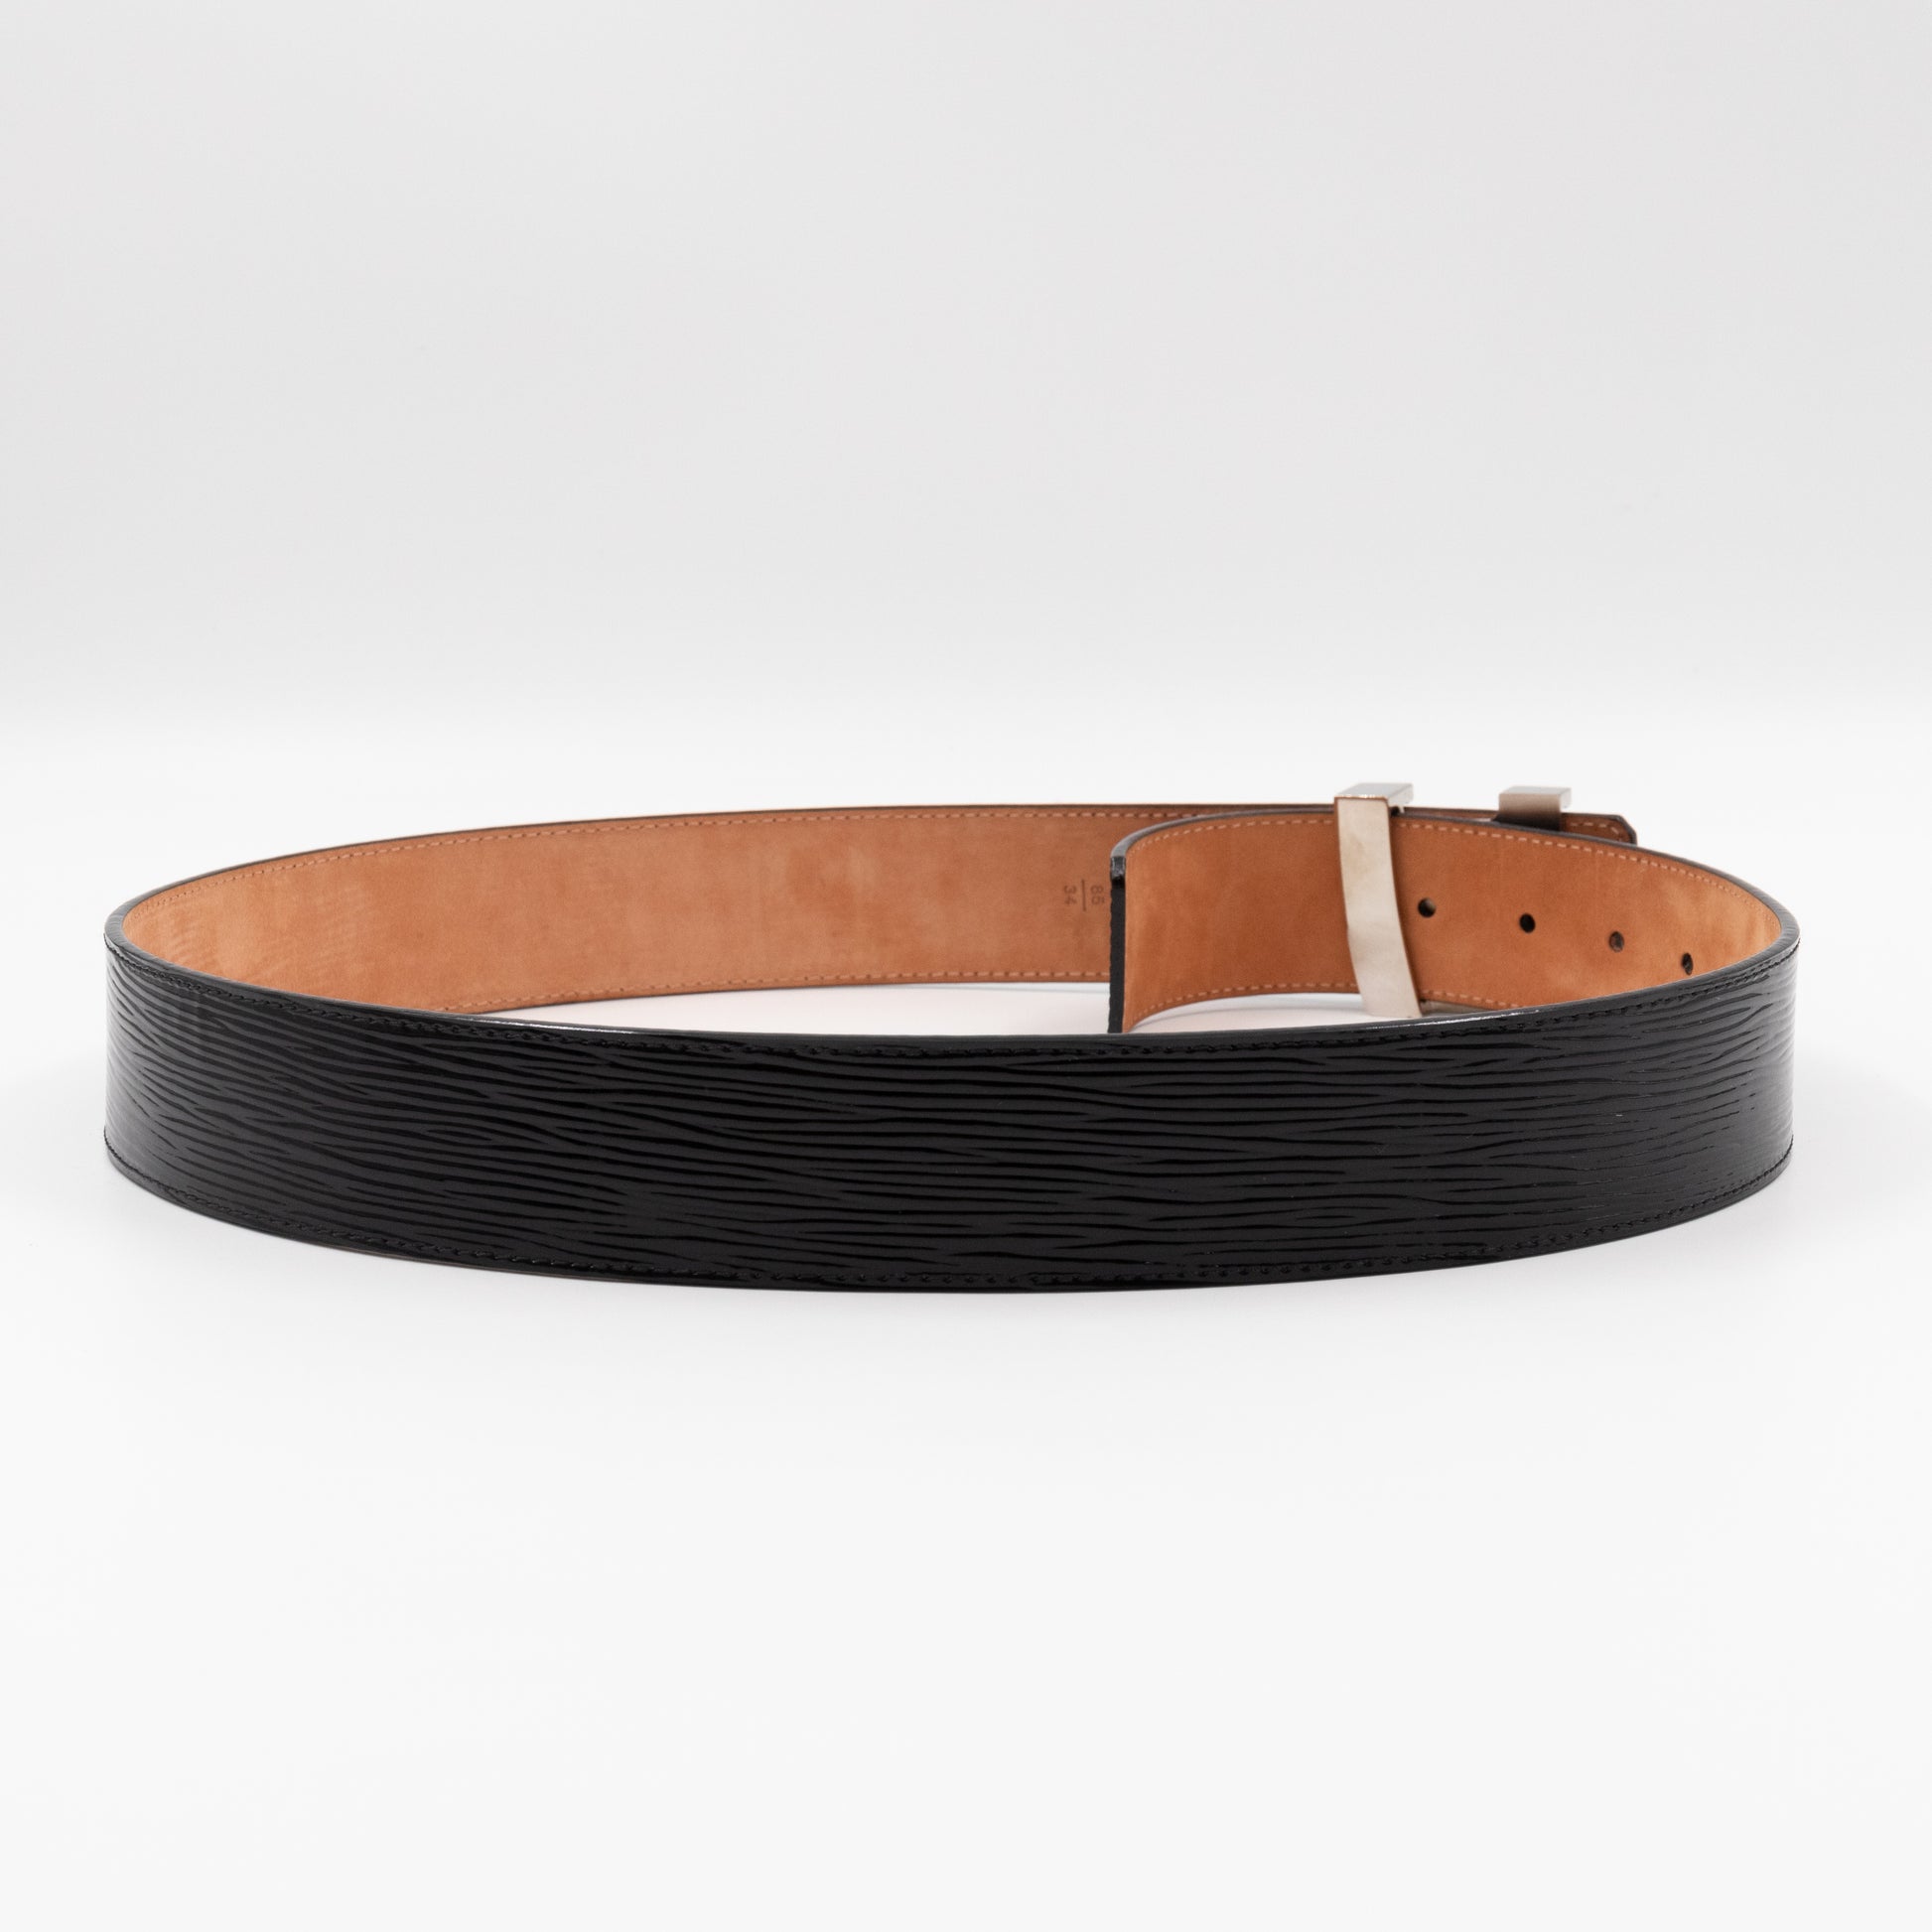 Louis Vuitton Epi Leather Initiales Belt - 35 / 90 (SHG-34108